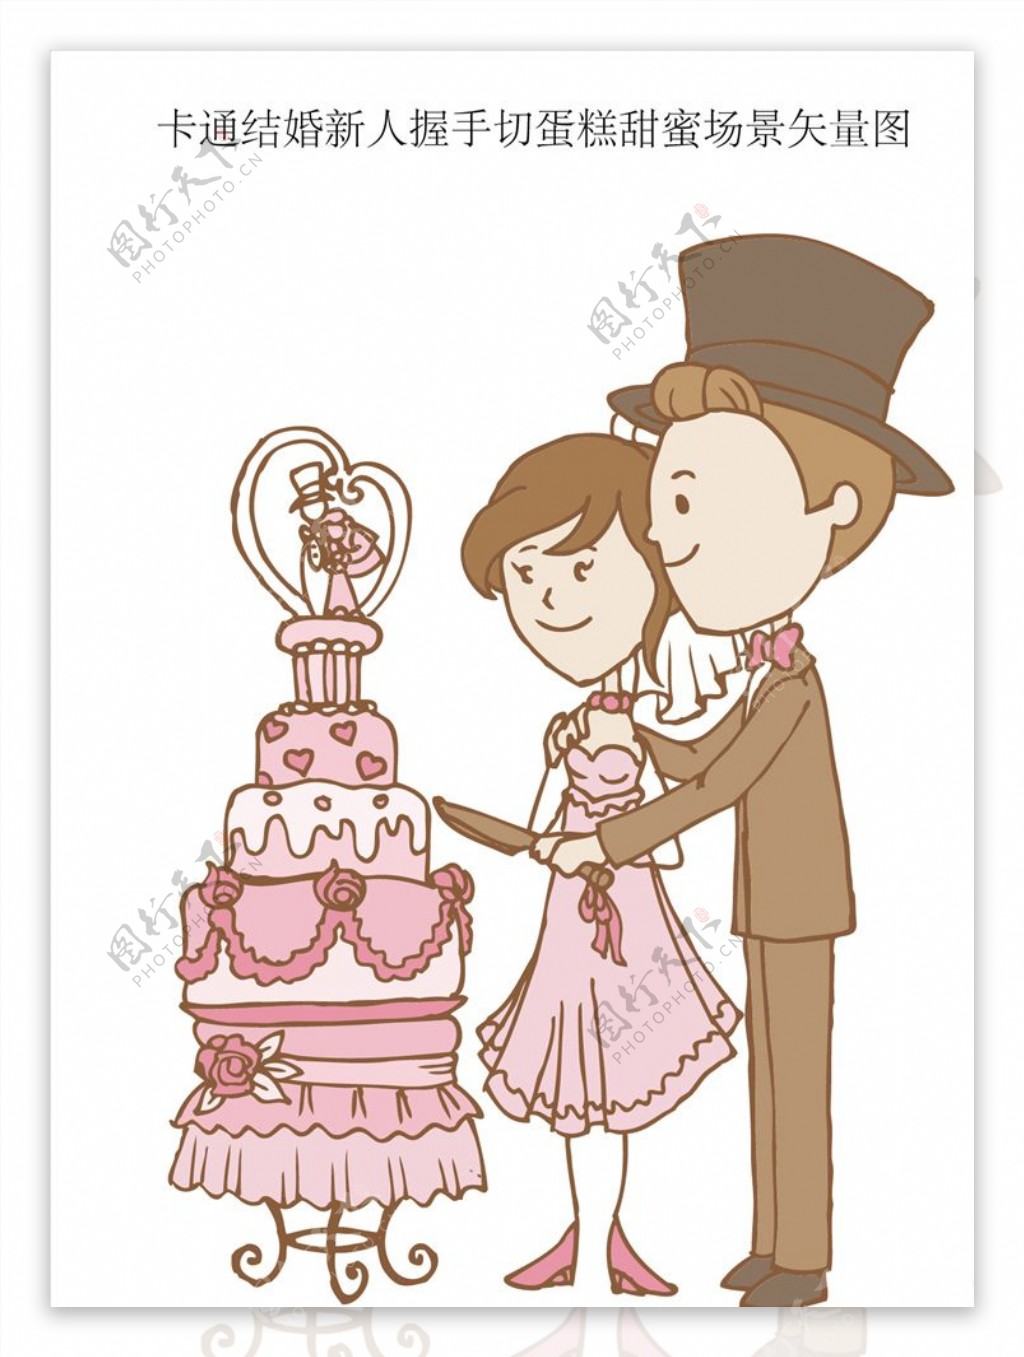 卡通结婚新人握手切蛋糕甜蜜场景